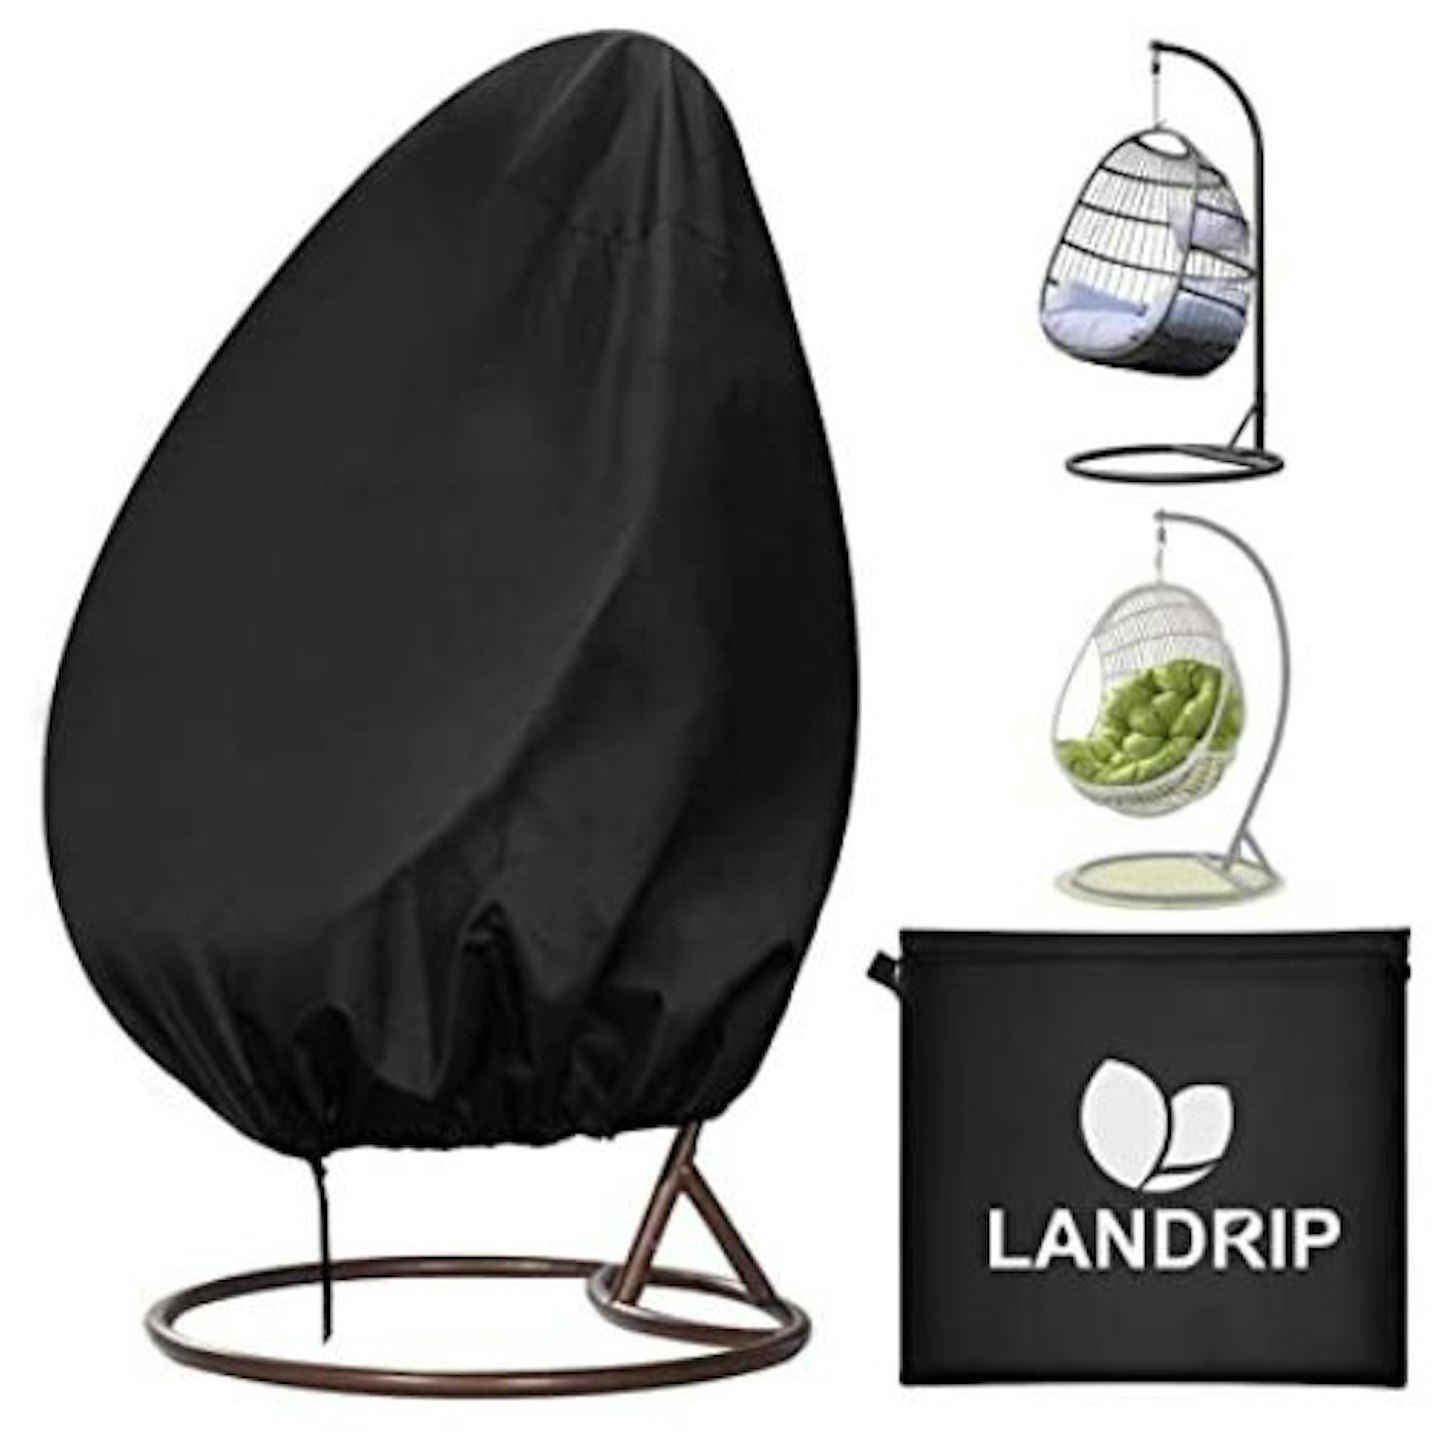 Landrip Egg Chair Cover